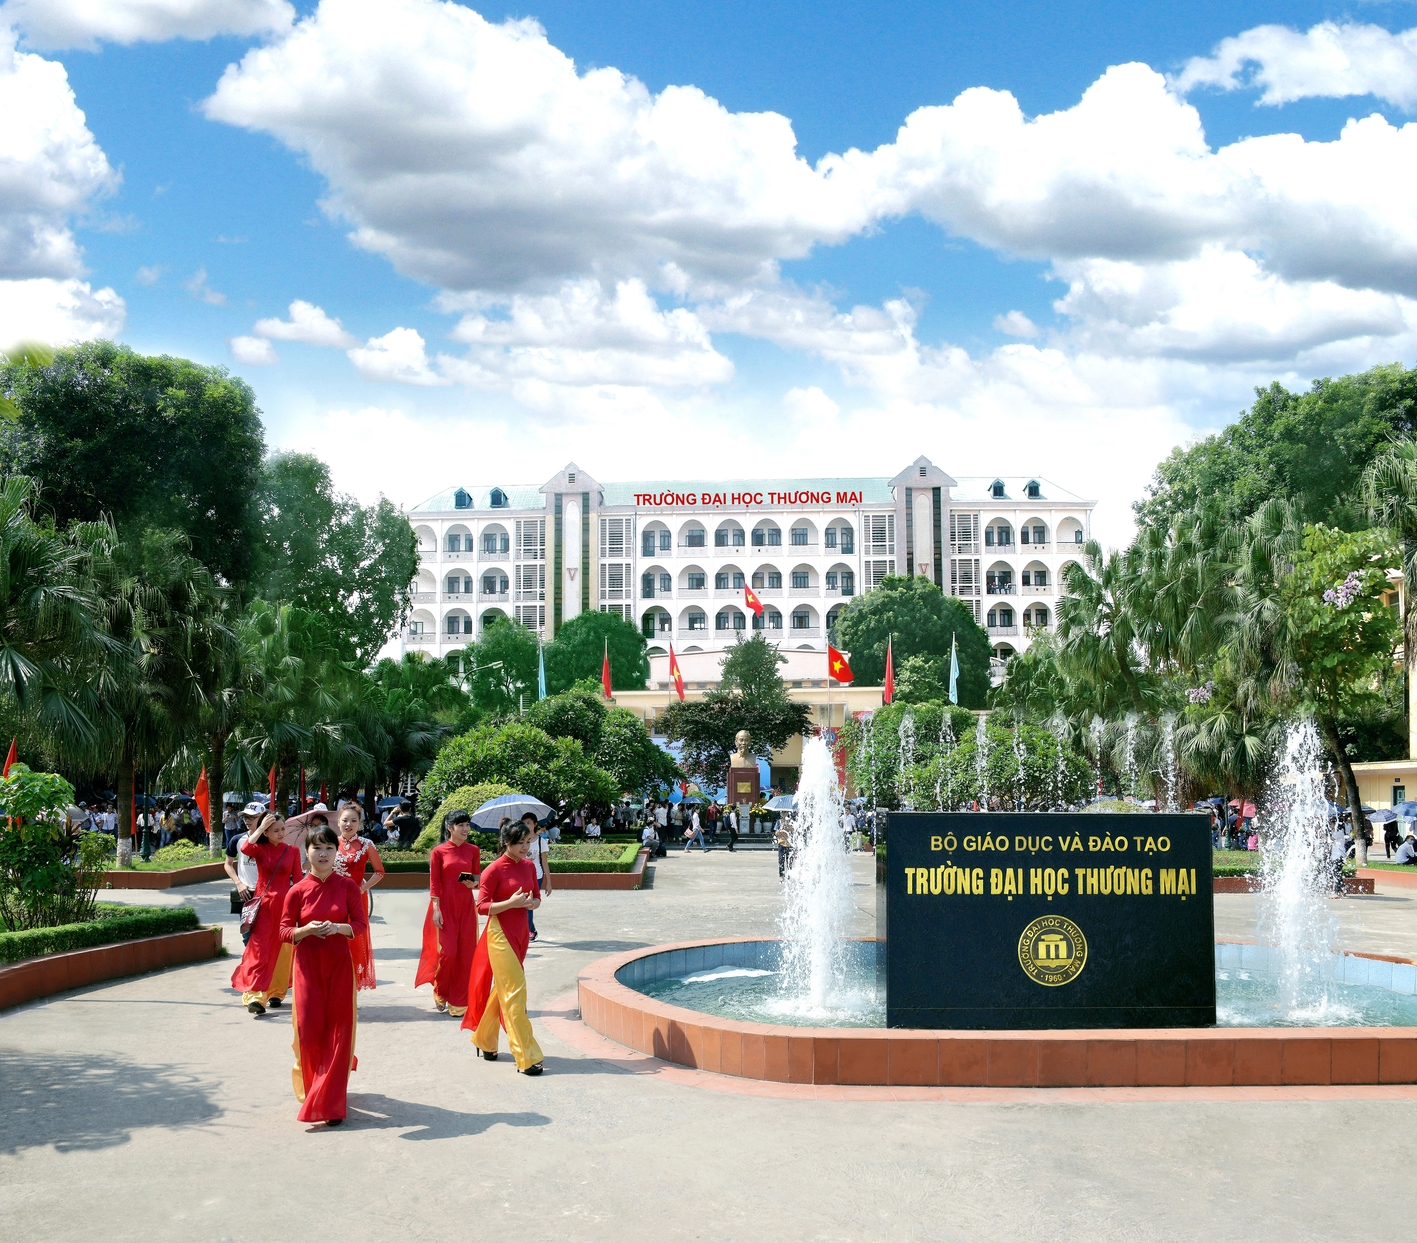 Trường Đại học Thương mại Hà Nội